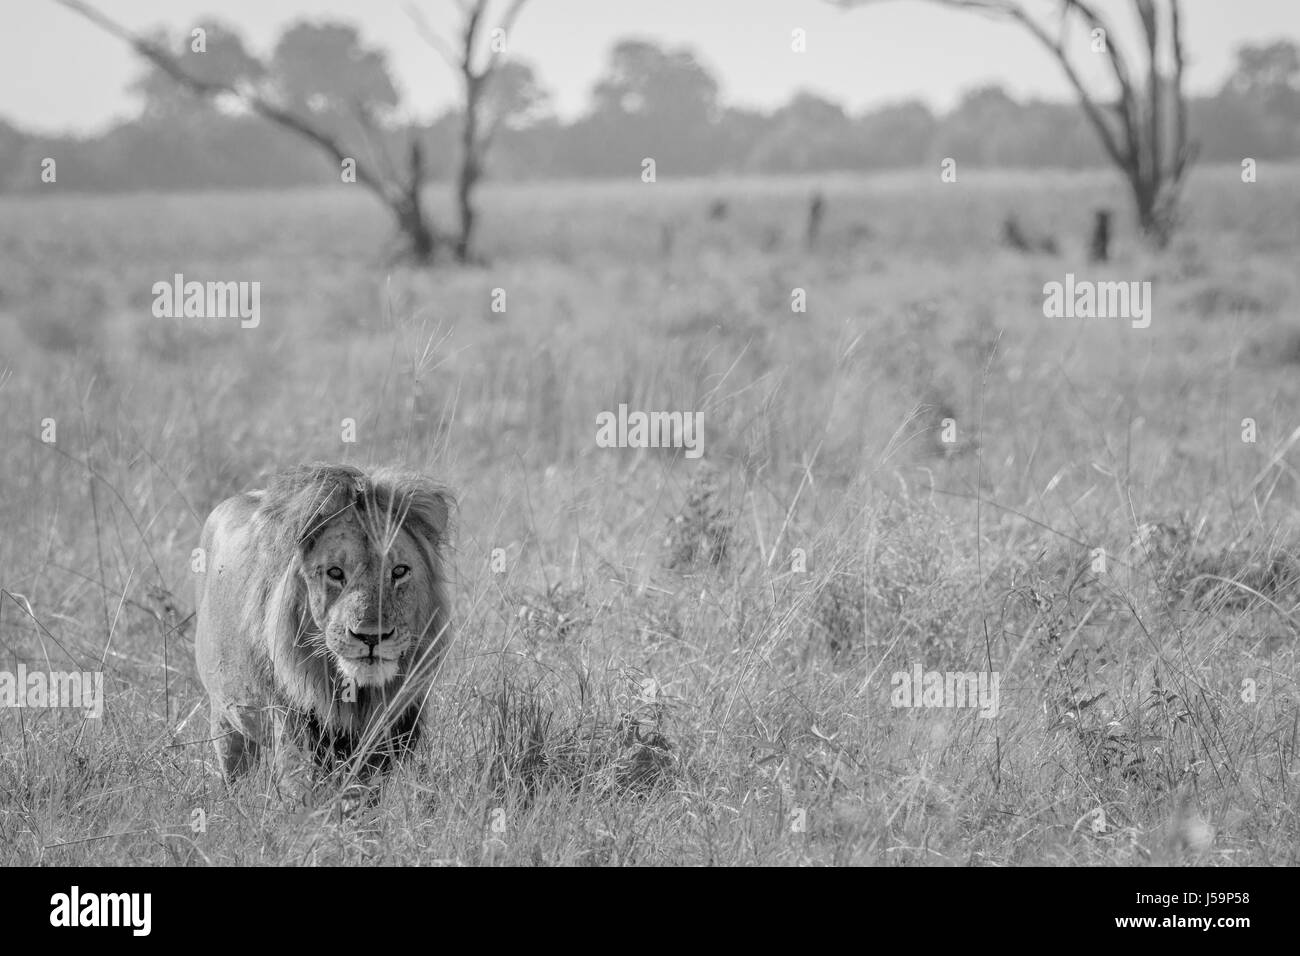 Lion marchant vers l'appareil photo en noir et blanc dans le parc national de Chobe, au Botswana. Banque D'Images